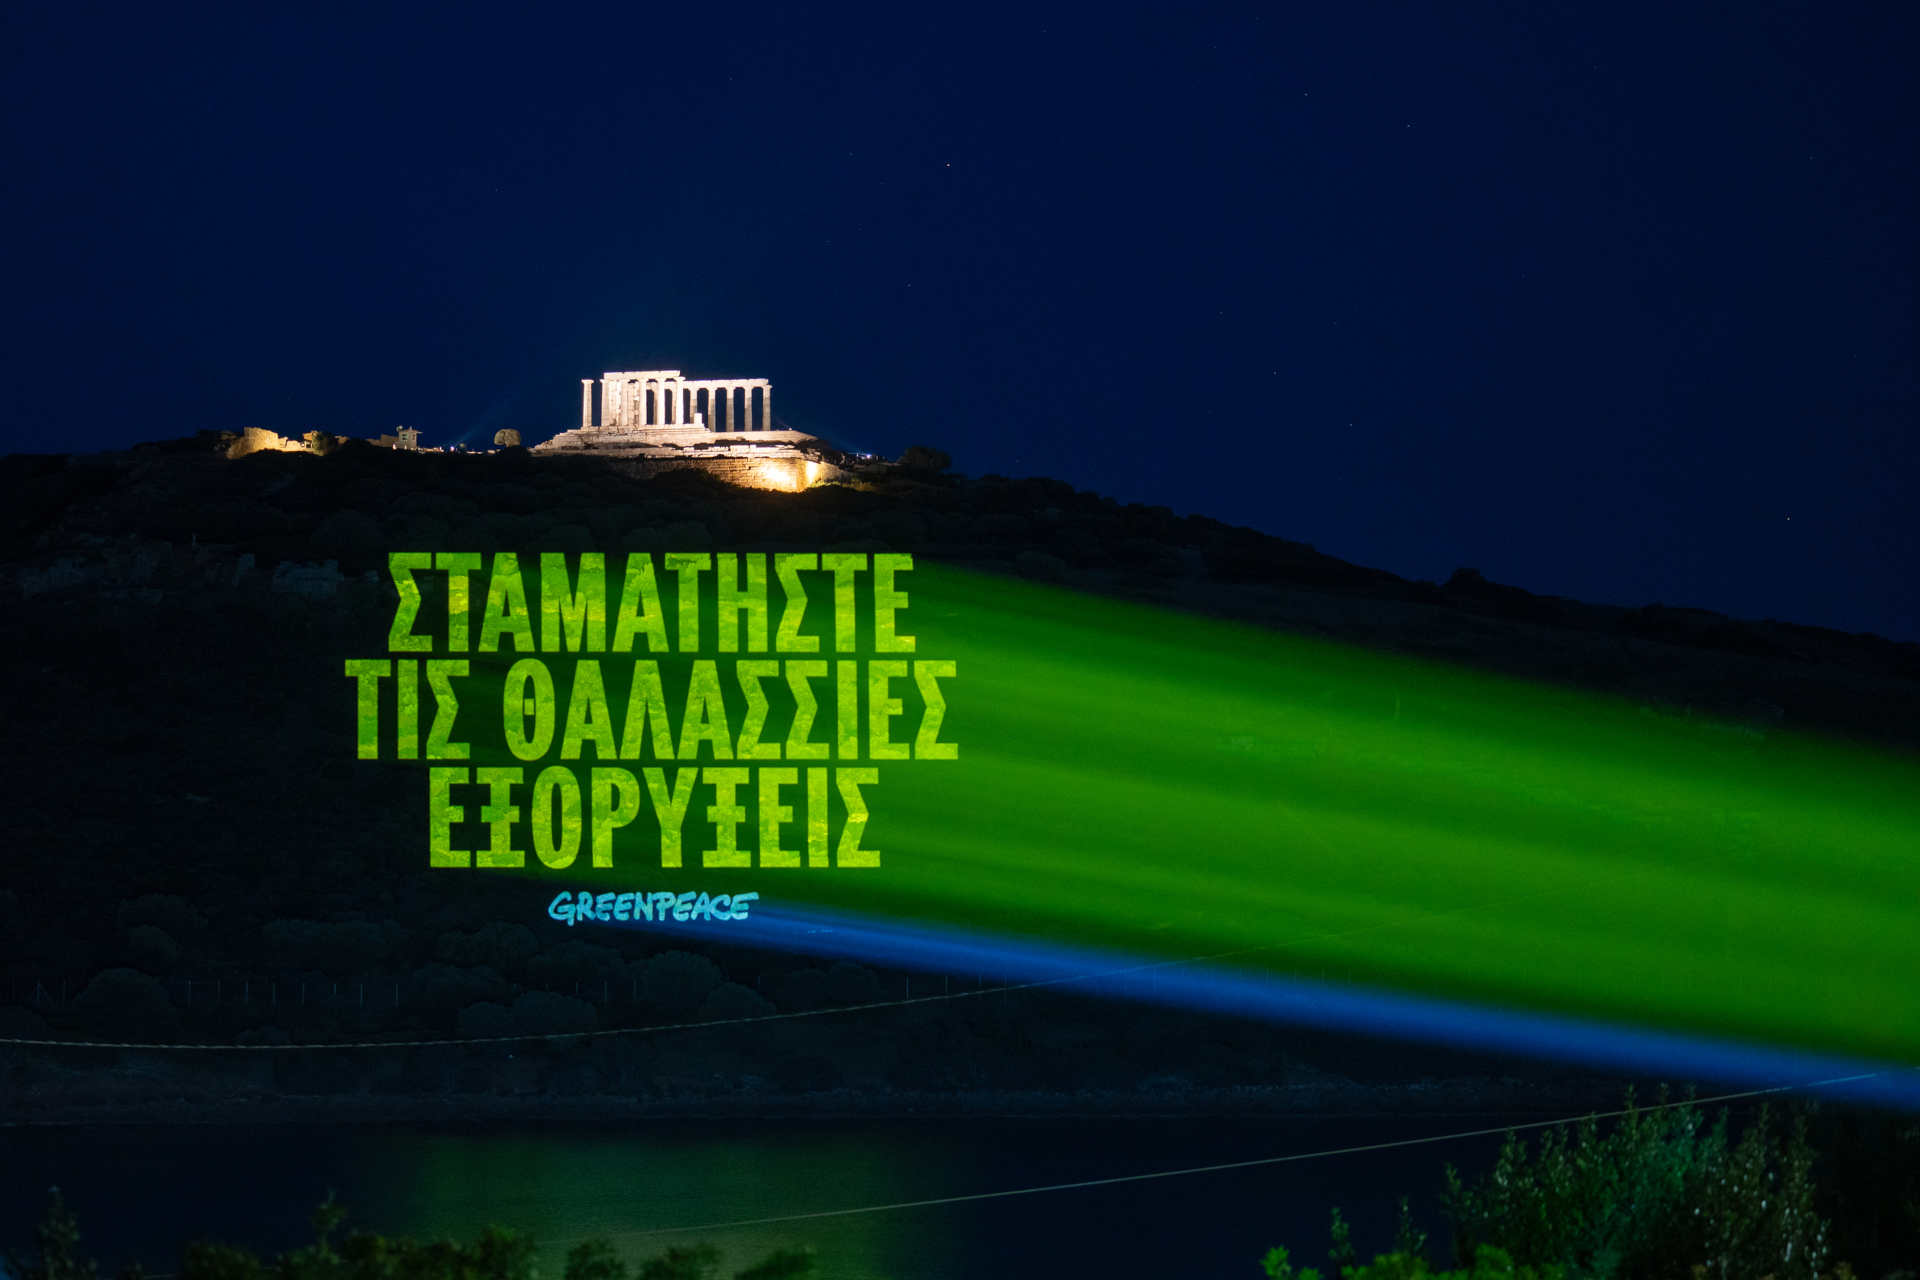 그리스: 그리스어로 읽은 메시지